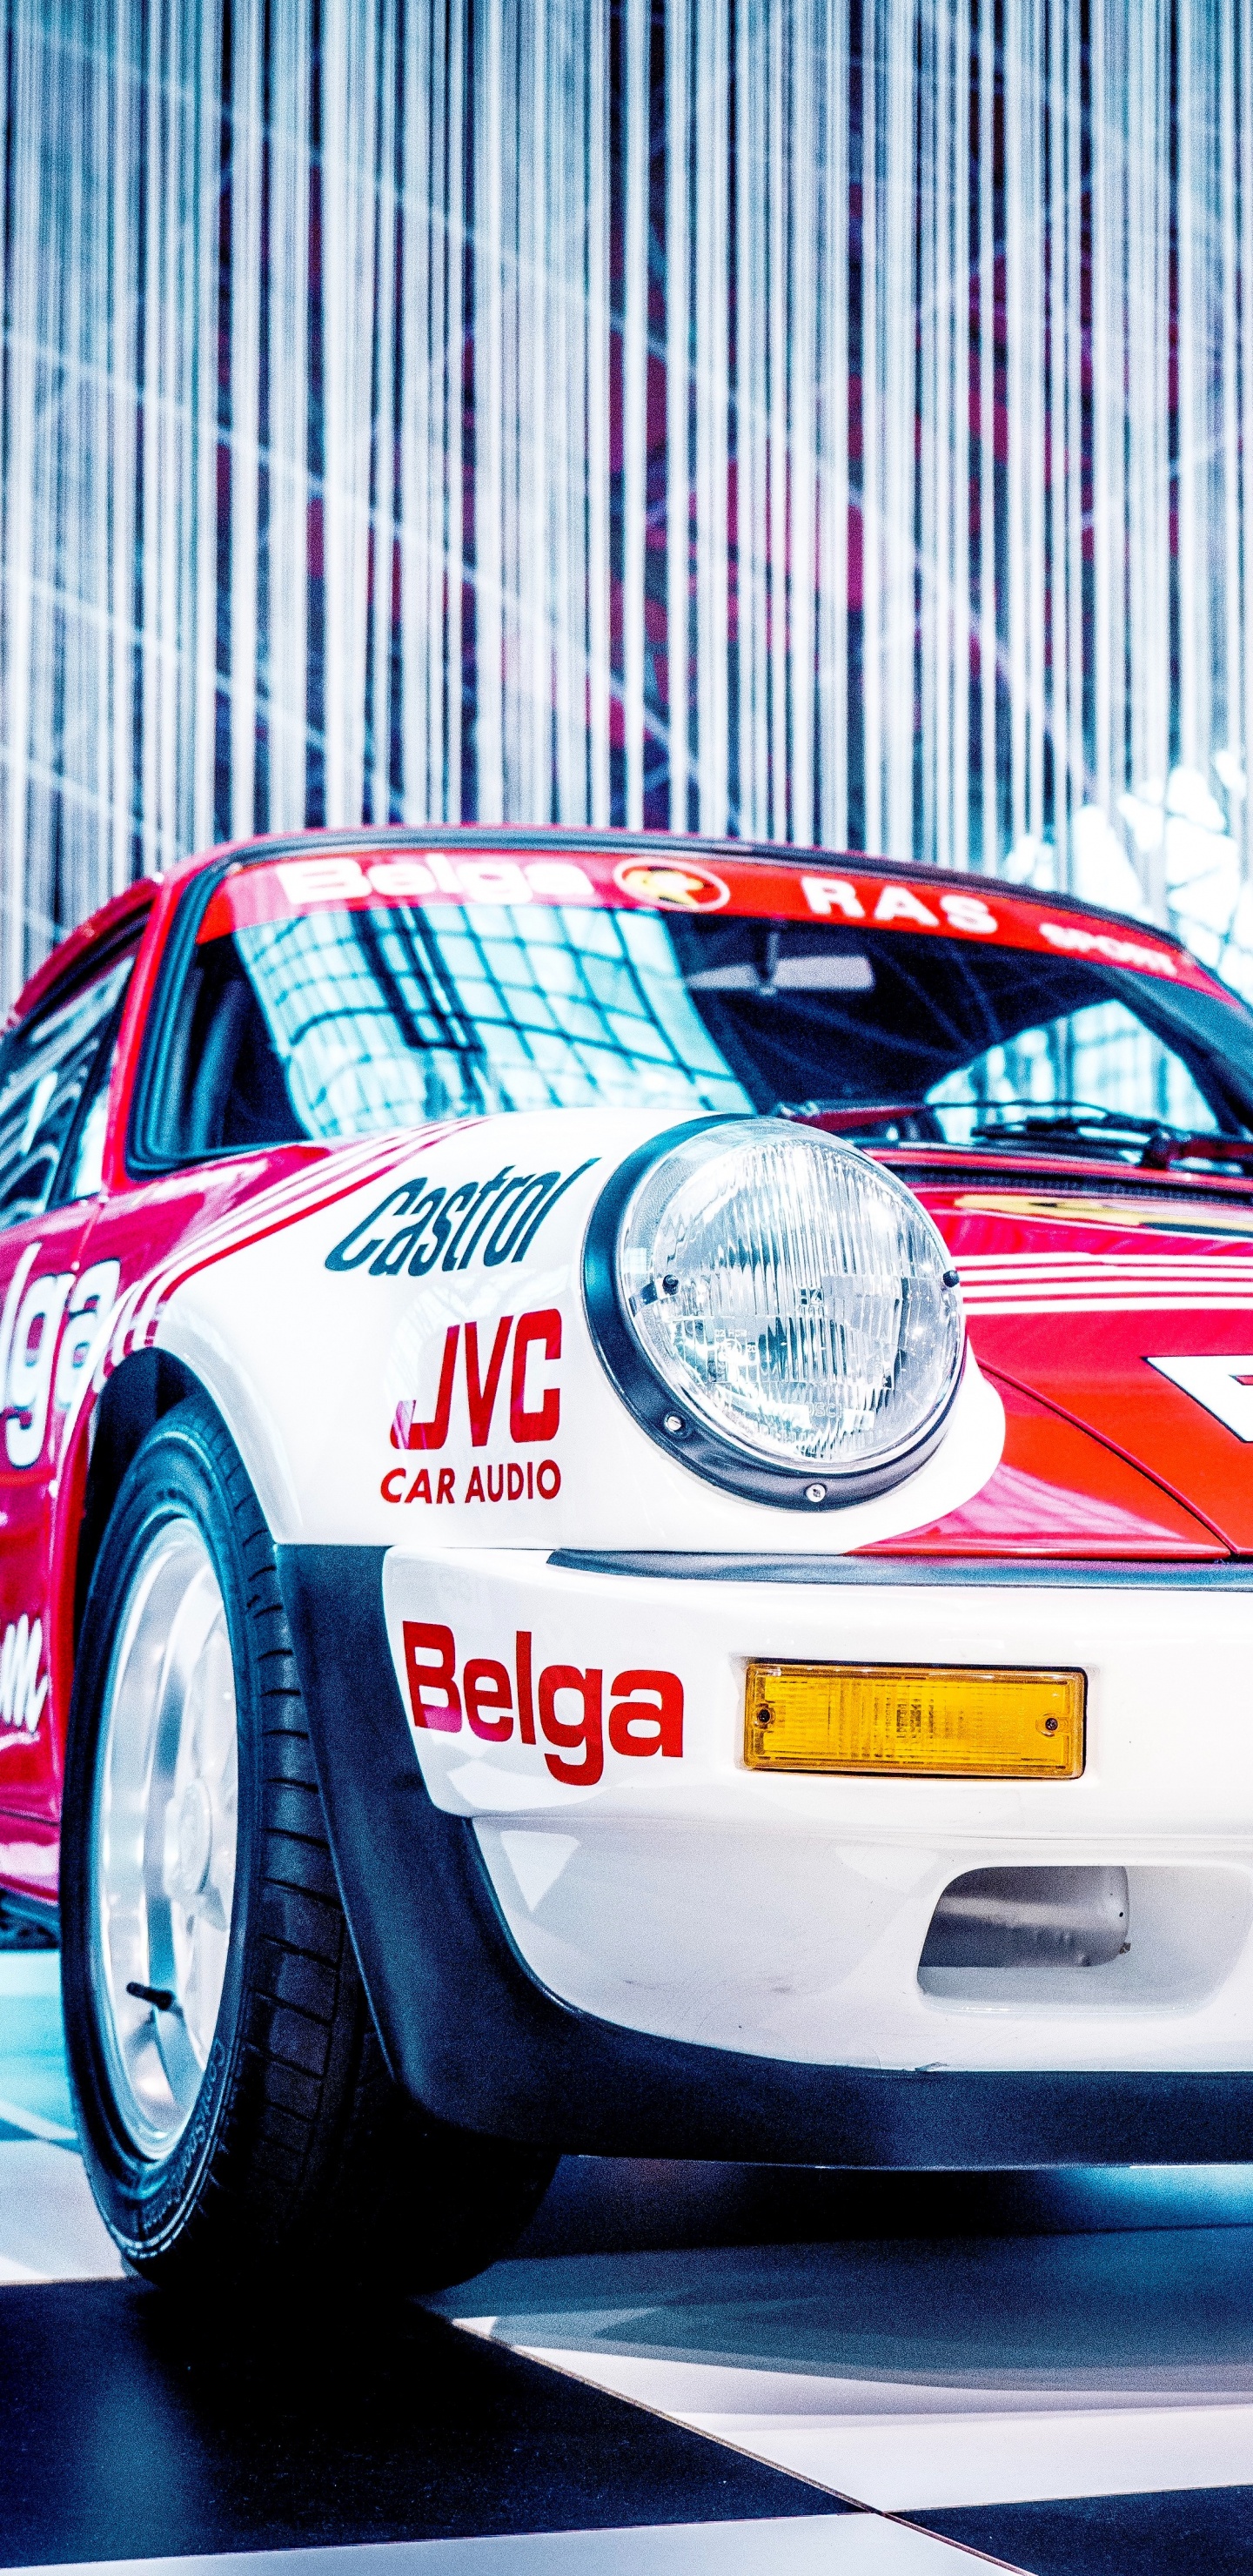 Porsche 911 Blanco y Rojo. Wallpaper in 1440x2960 Resolution